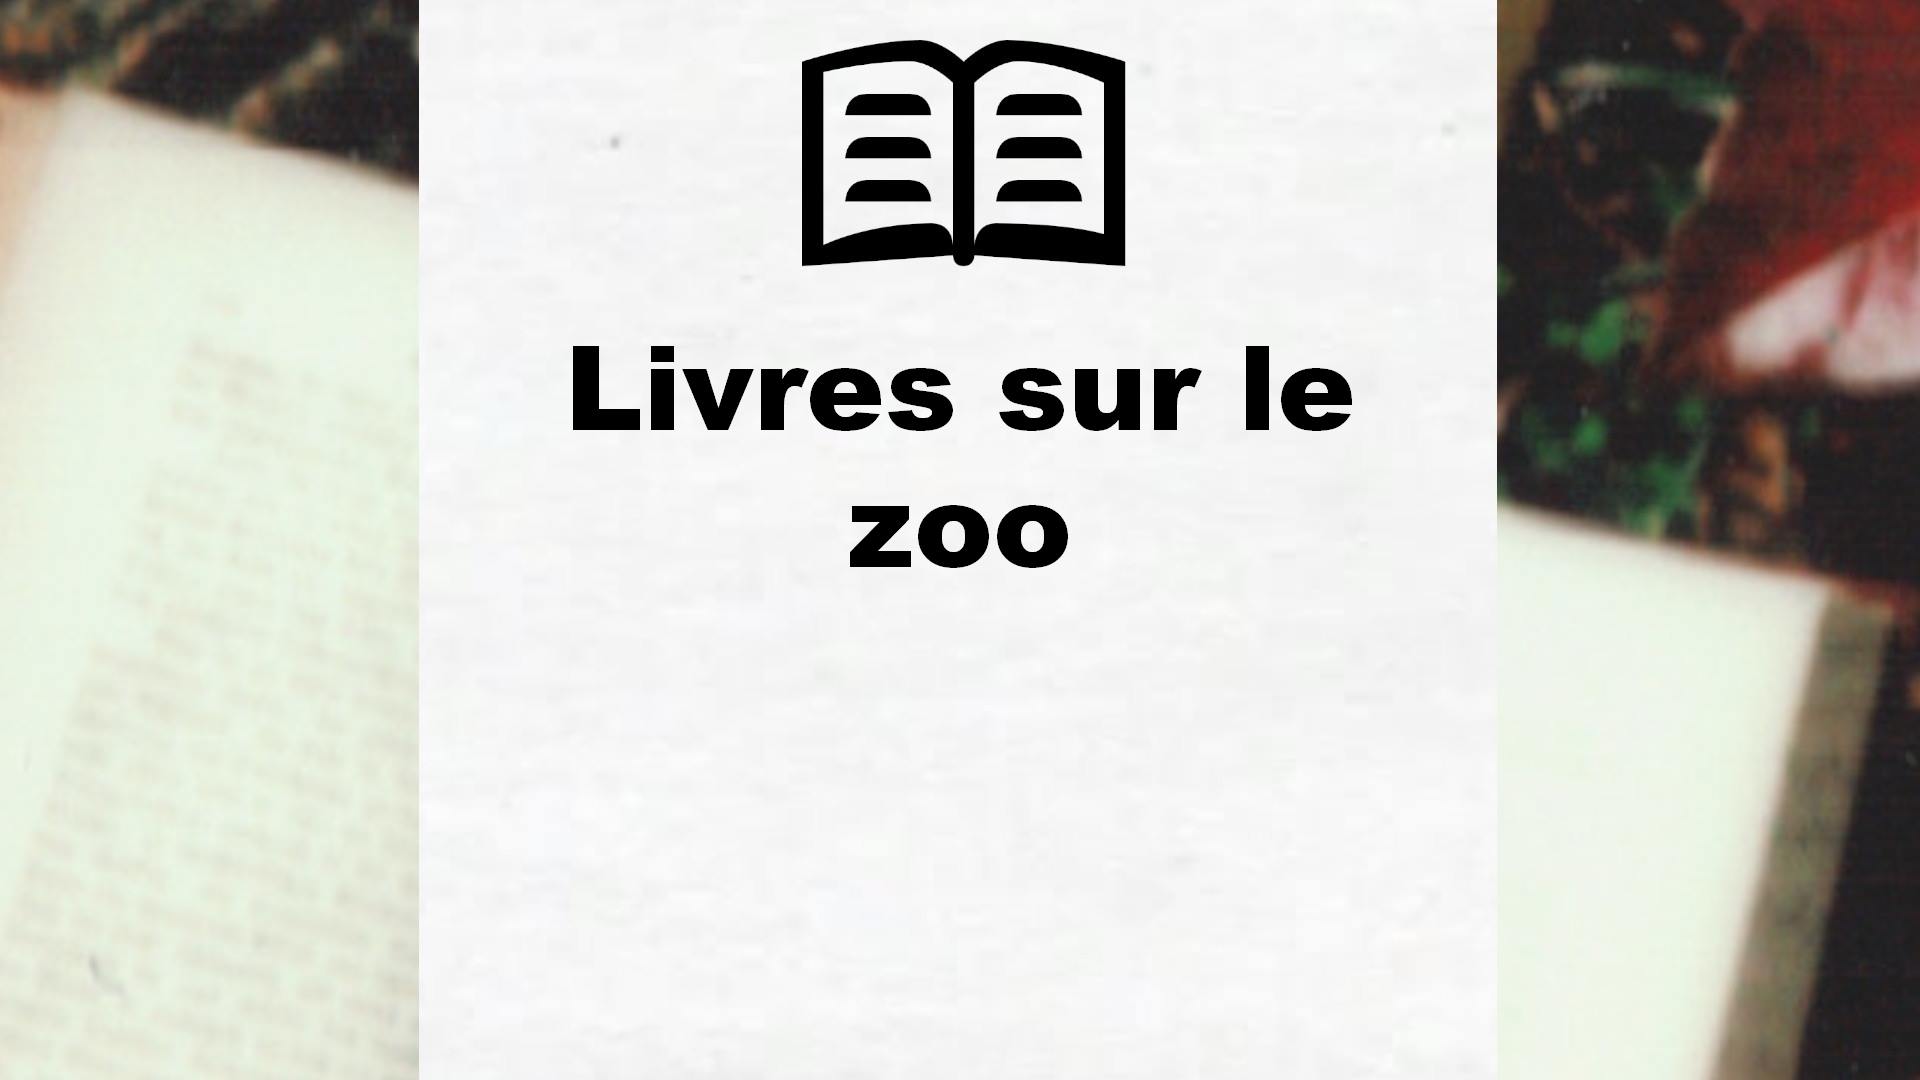 Livres sur le zoo